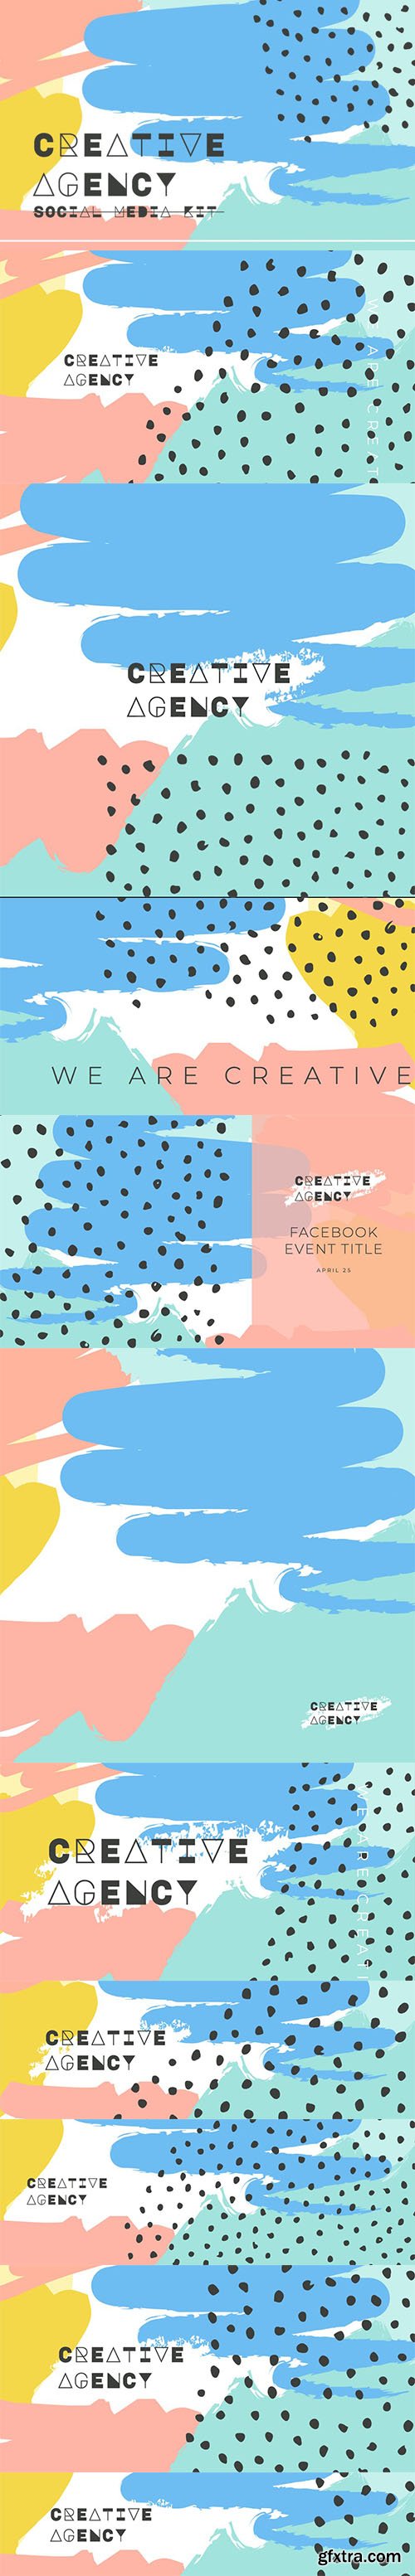 Creative Agency - Social Media Kit